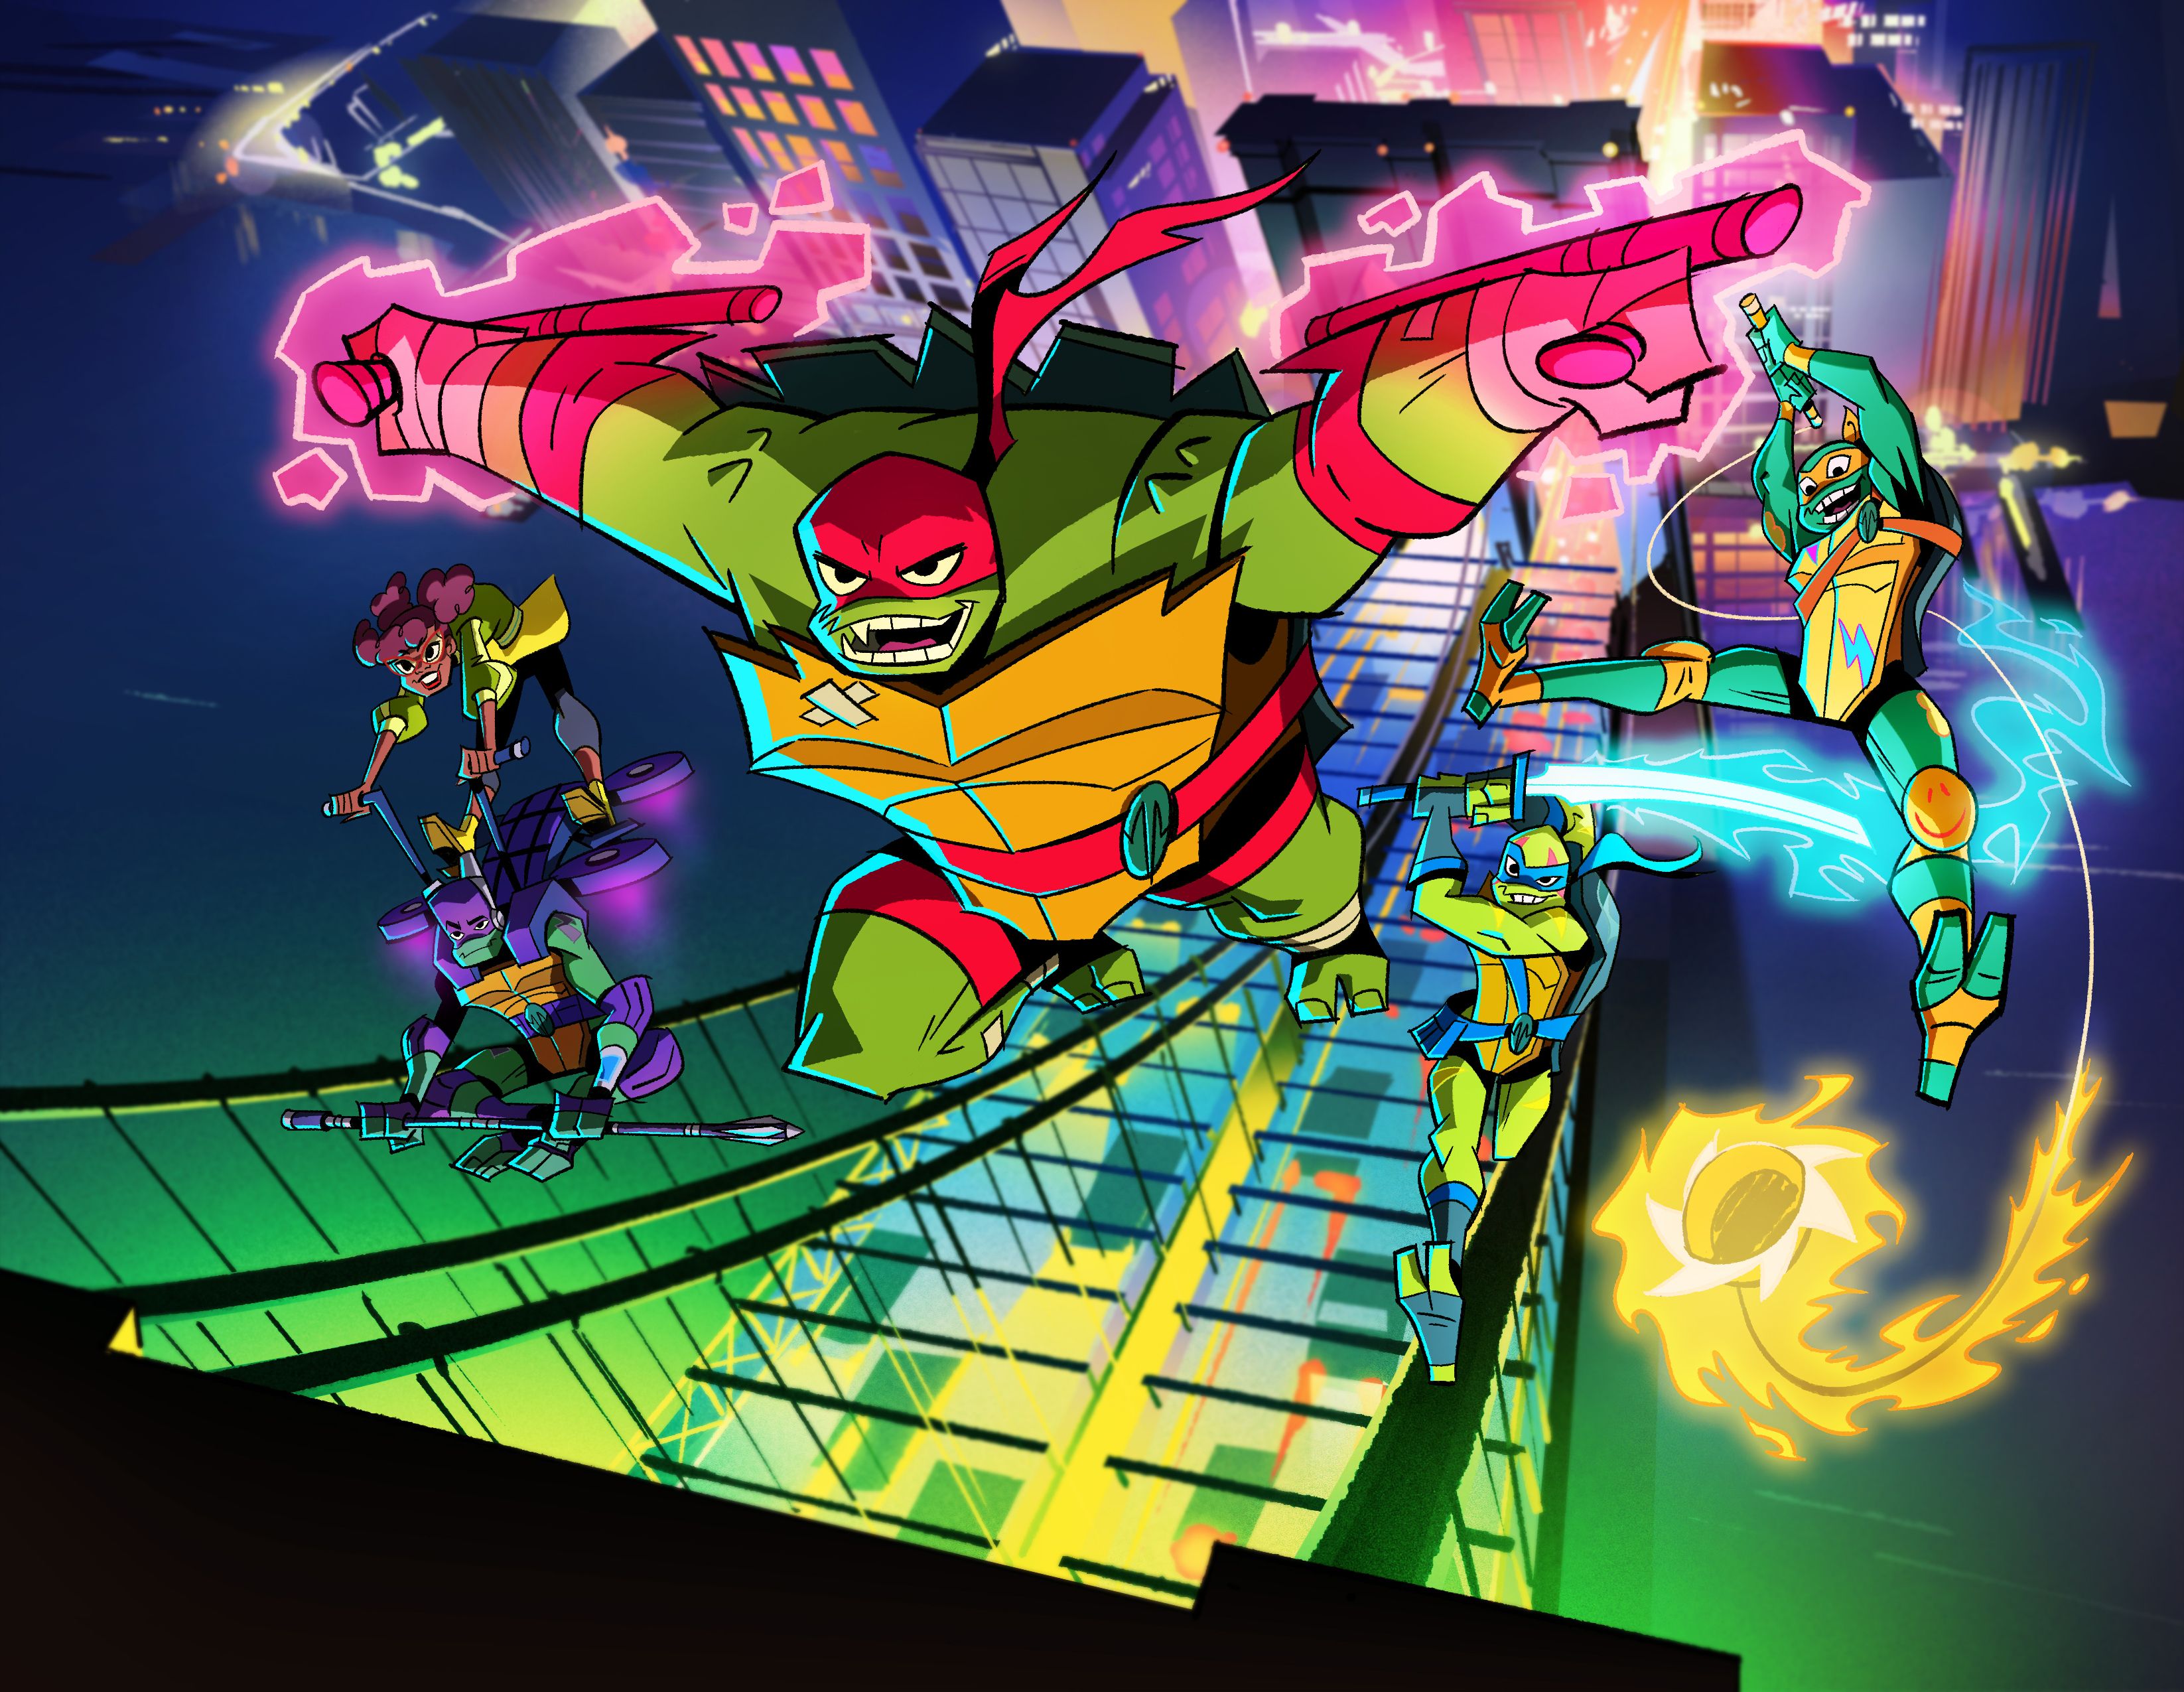 Rise of the Teenage Mutant Ninja Turtles Artwork Revealed